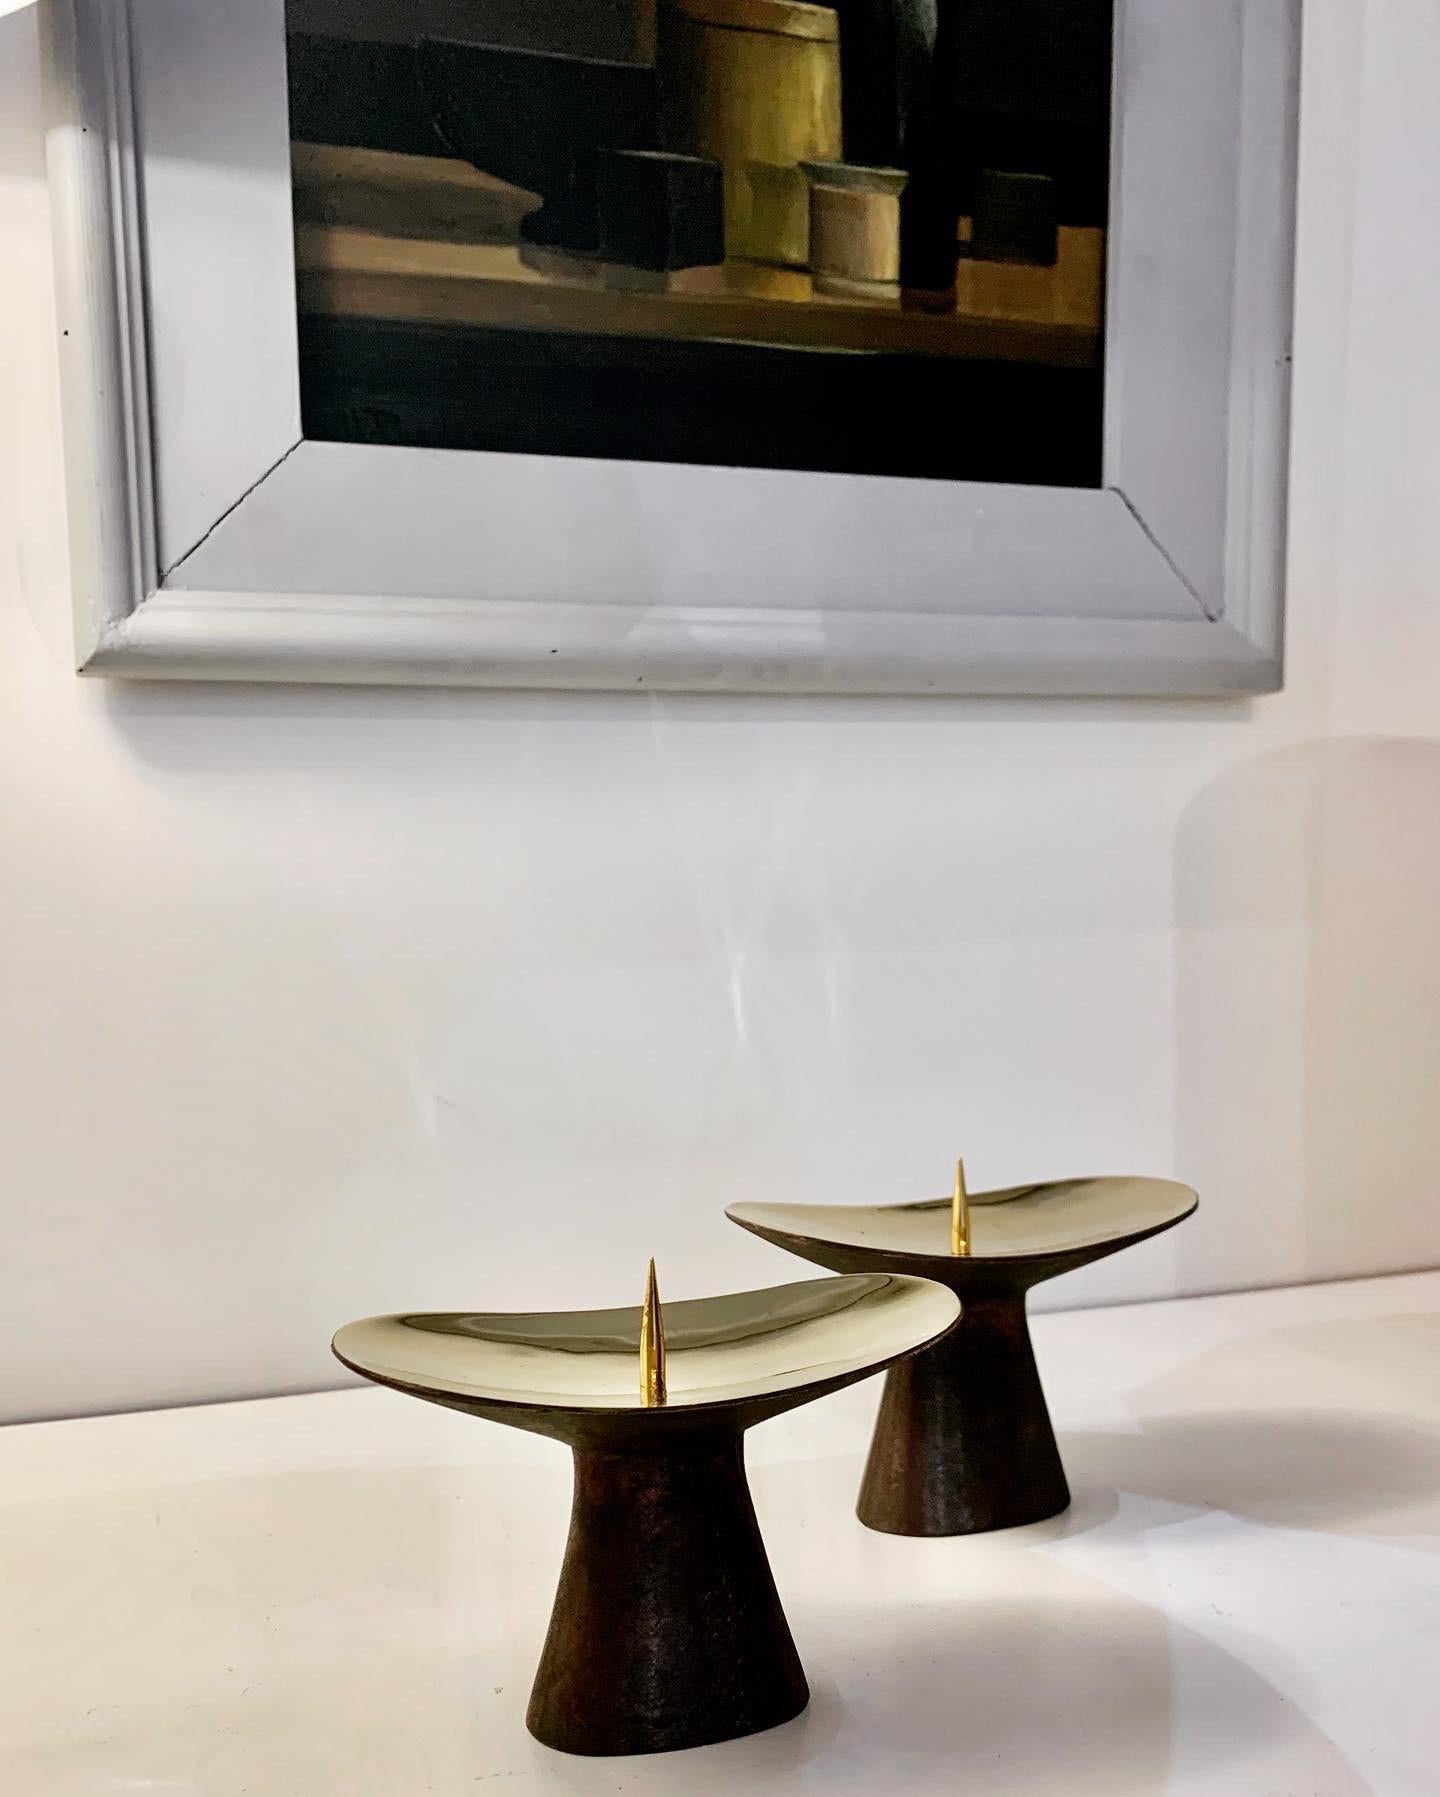 Paar patinierte Kerzenhalter, entworfen von Carl Aubock im Jahr 1948. Dieses unverwechselbare Stück aus der Auböck-Kollektion wird seit 1948 in der Wiener Werkstätte von Hand gefertigt und ist seither von exakt gleicher Qualität. 
Die